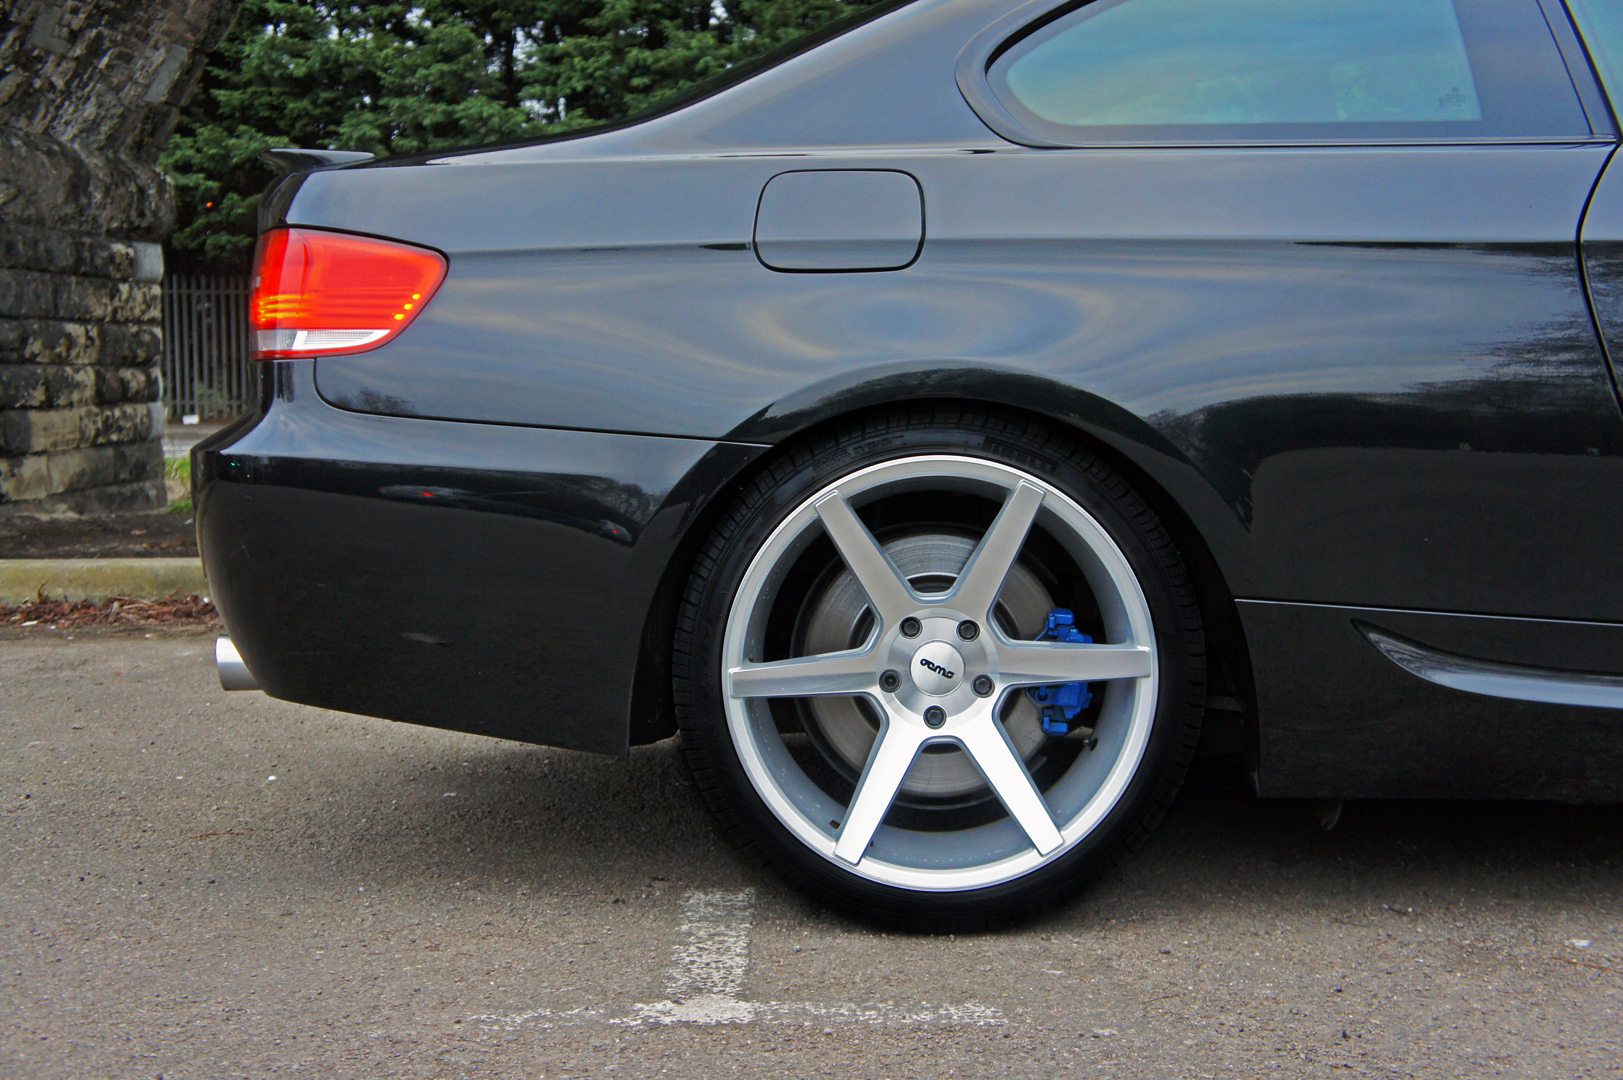 07-13 E90 / E92 / E93 TPI Chrome Wheel Bolt Covers 17mm Nut Caps for BMW M3 